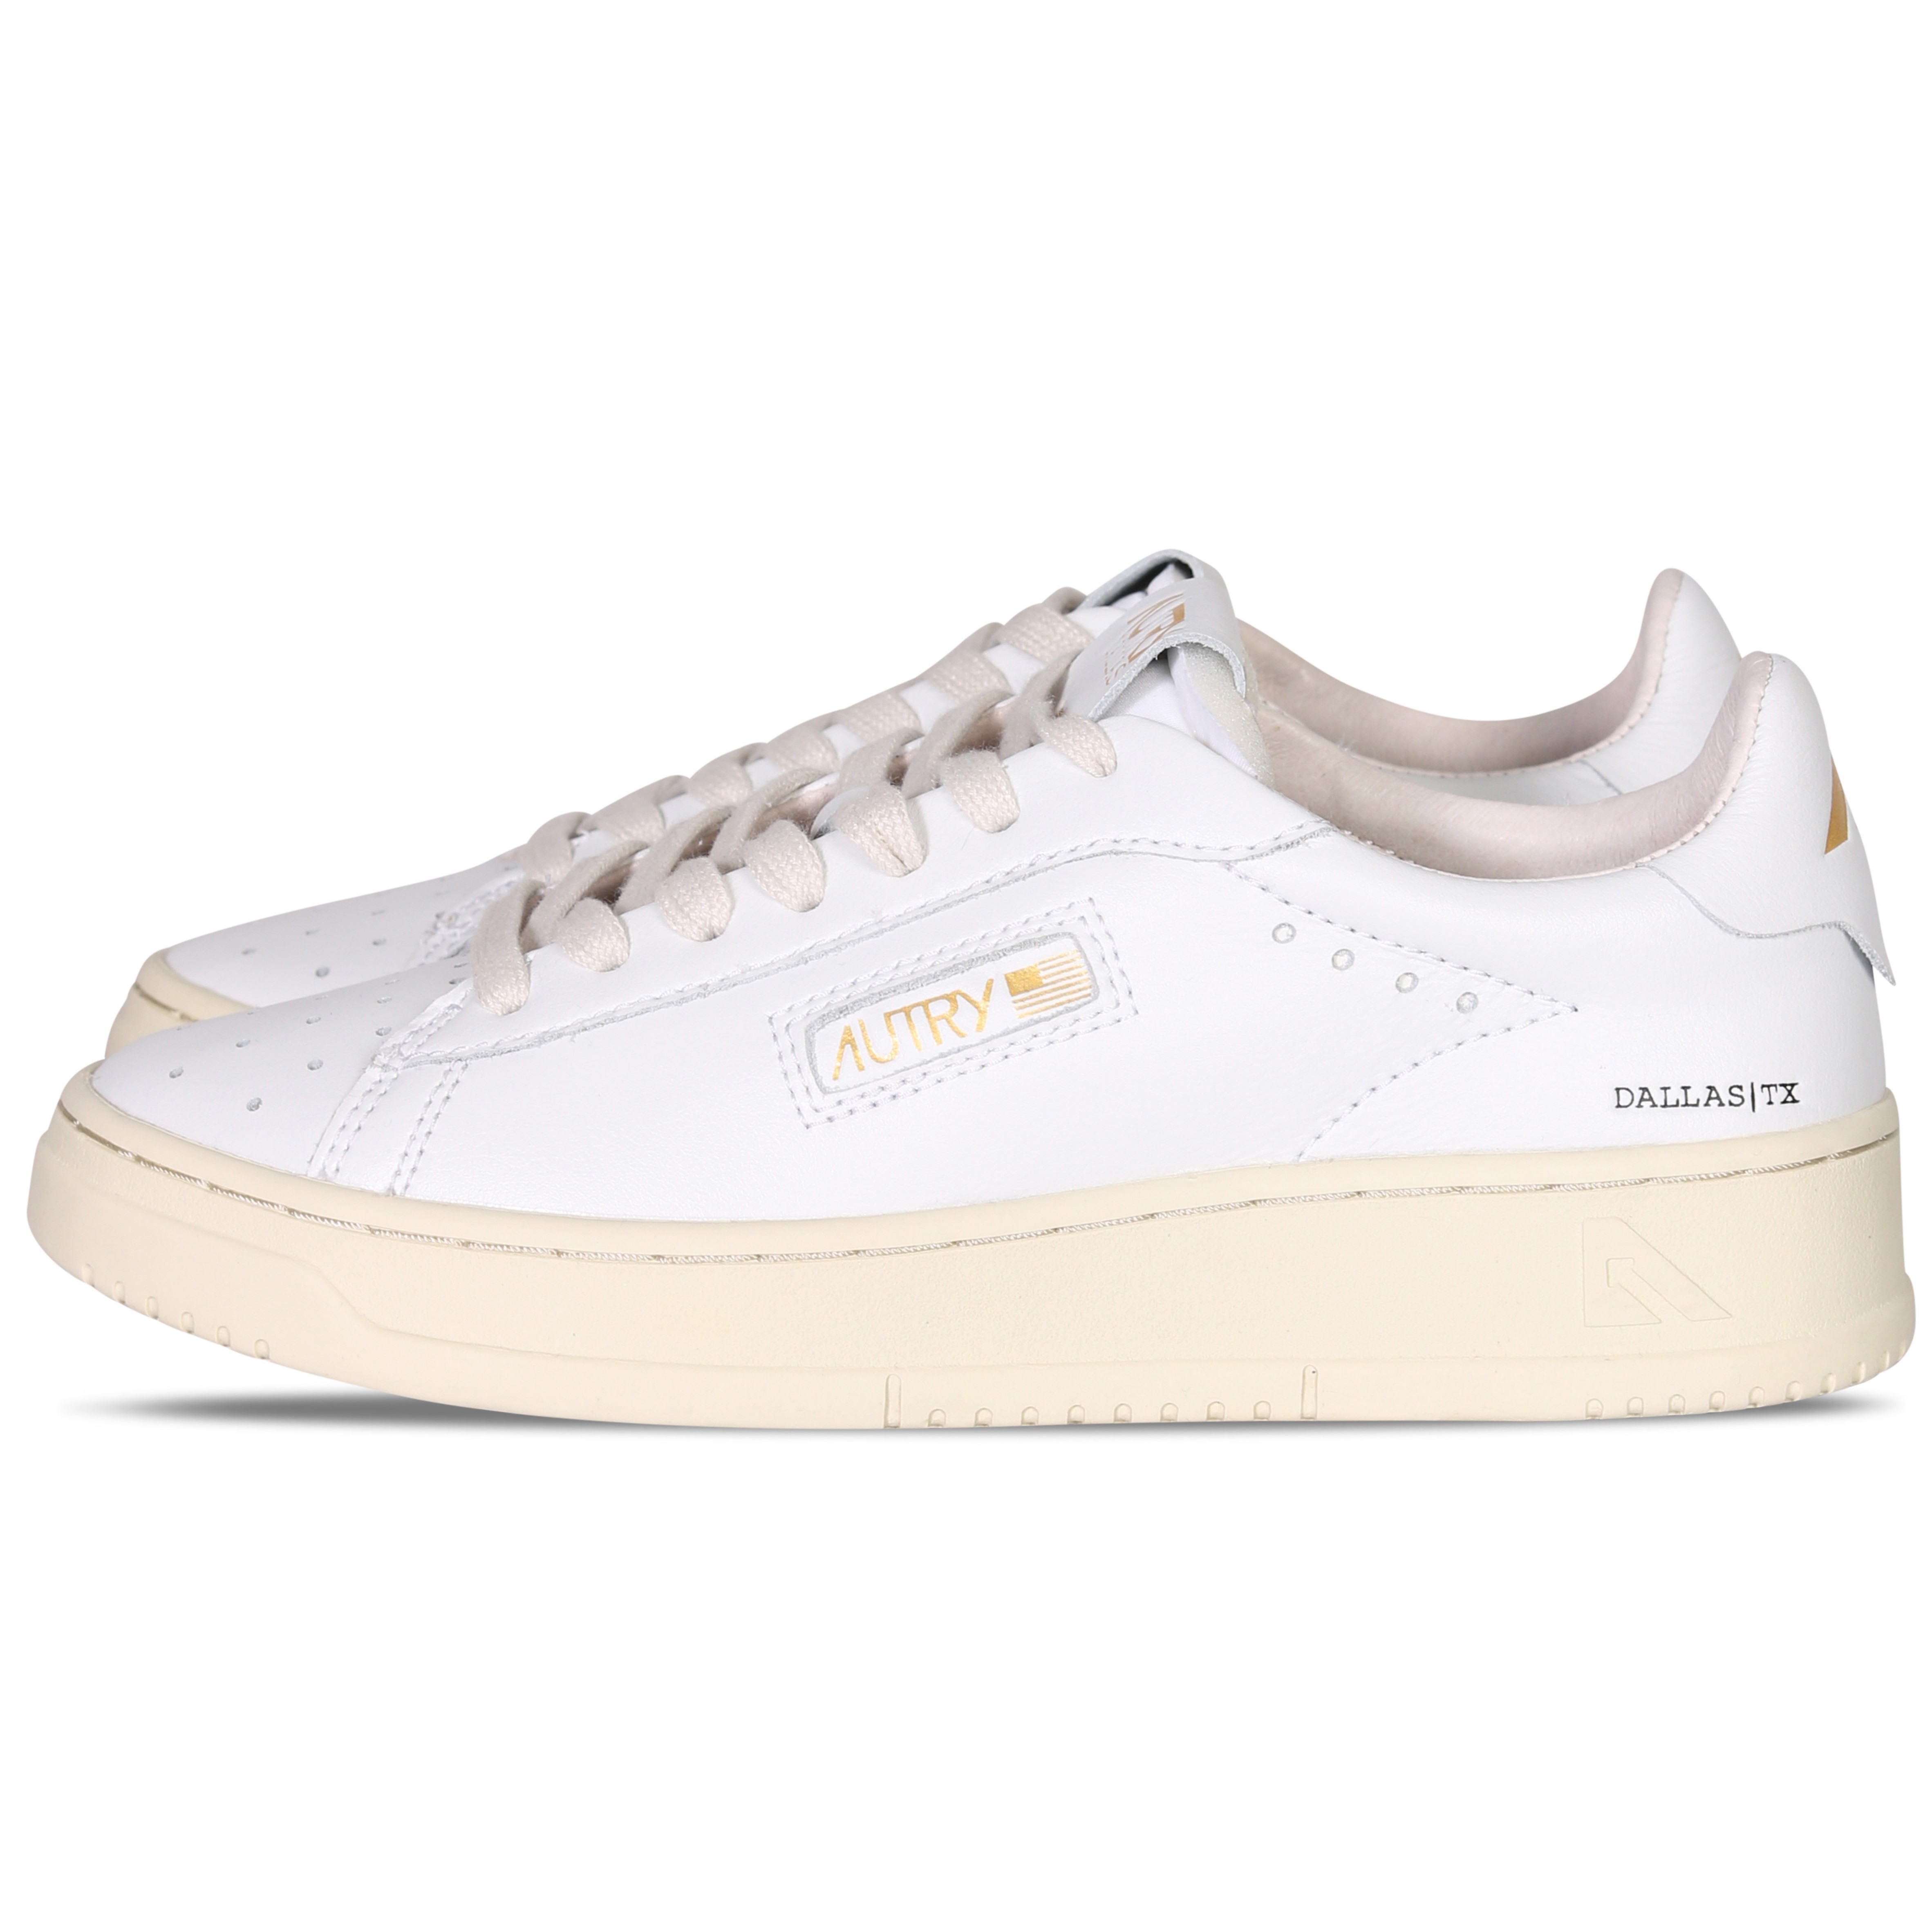 Autry Action Shoes Dallas Low Sneaker White/Platinum